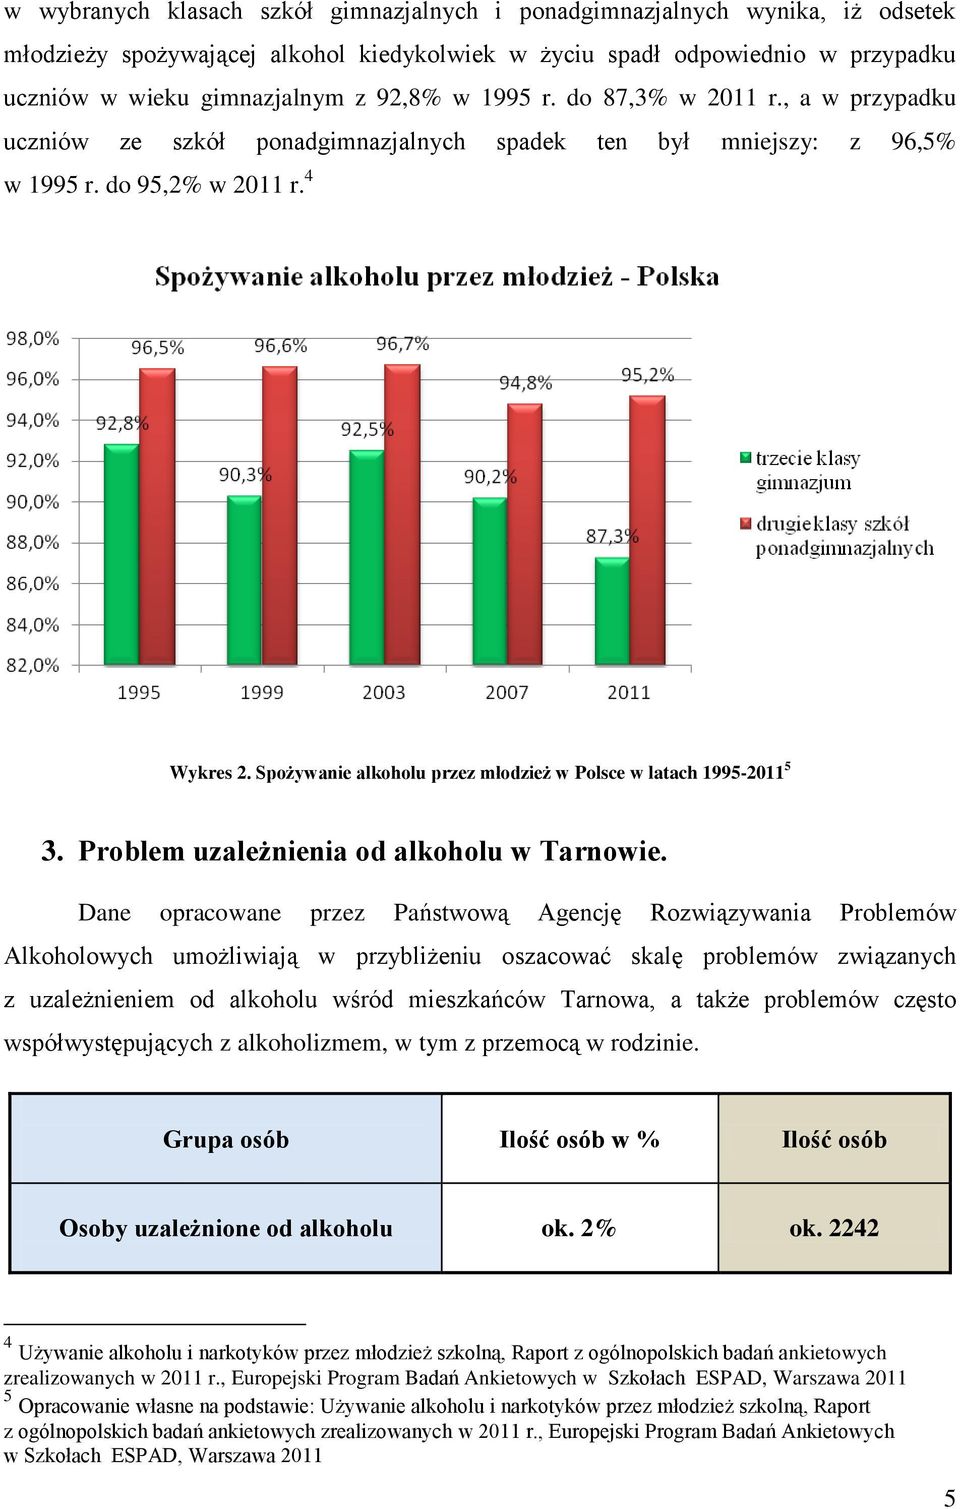 Spożywanie alkoholu przez młodzież w Polsce w latach 1995-2011 5 3. Problem uzależnienia od alkoholu w Tarnowie.